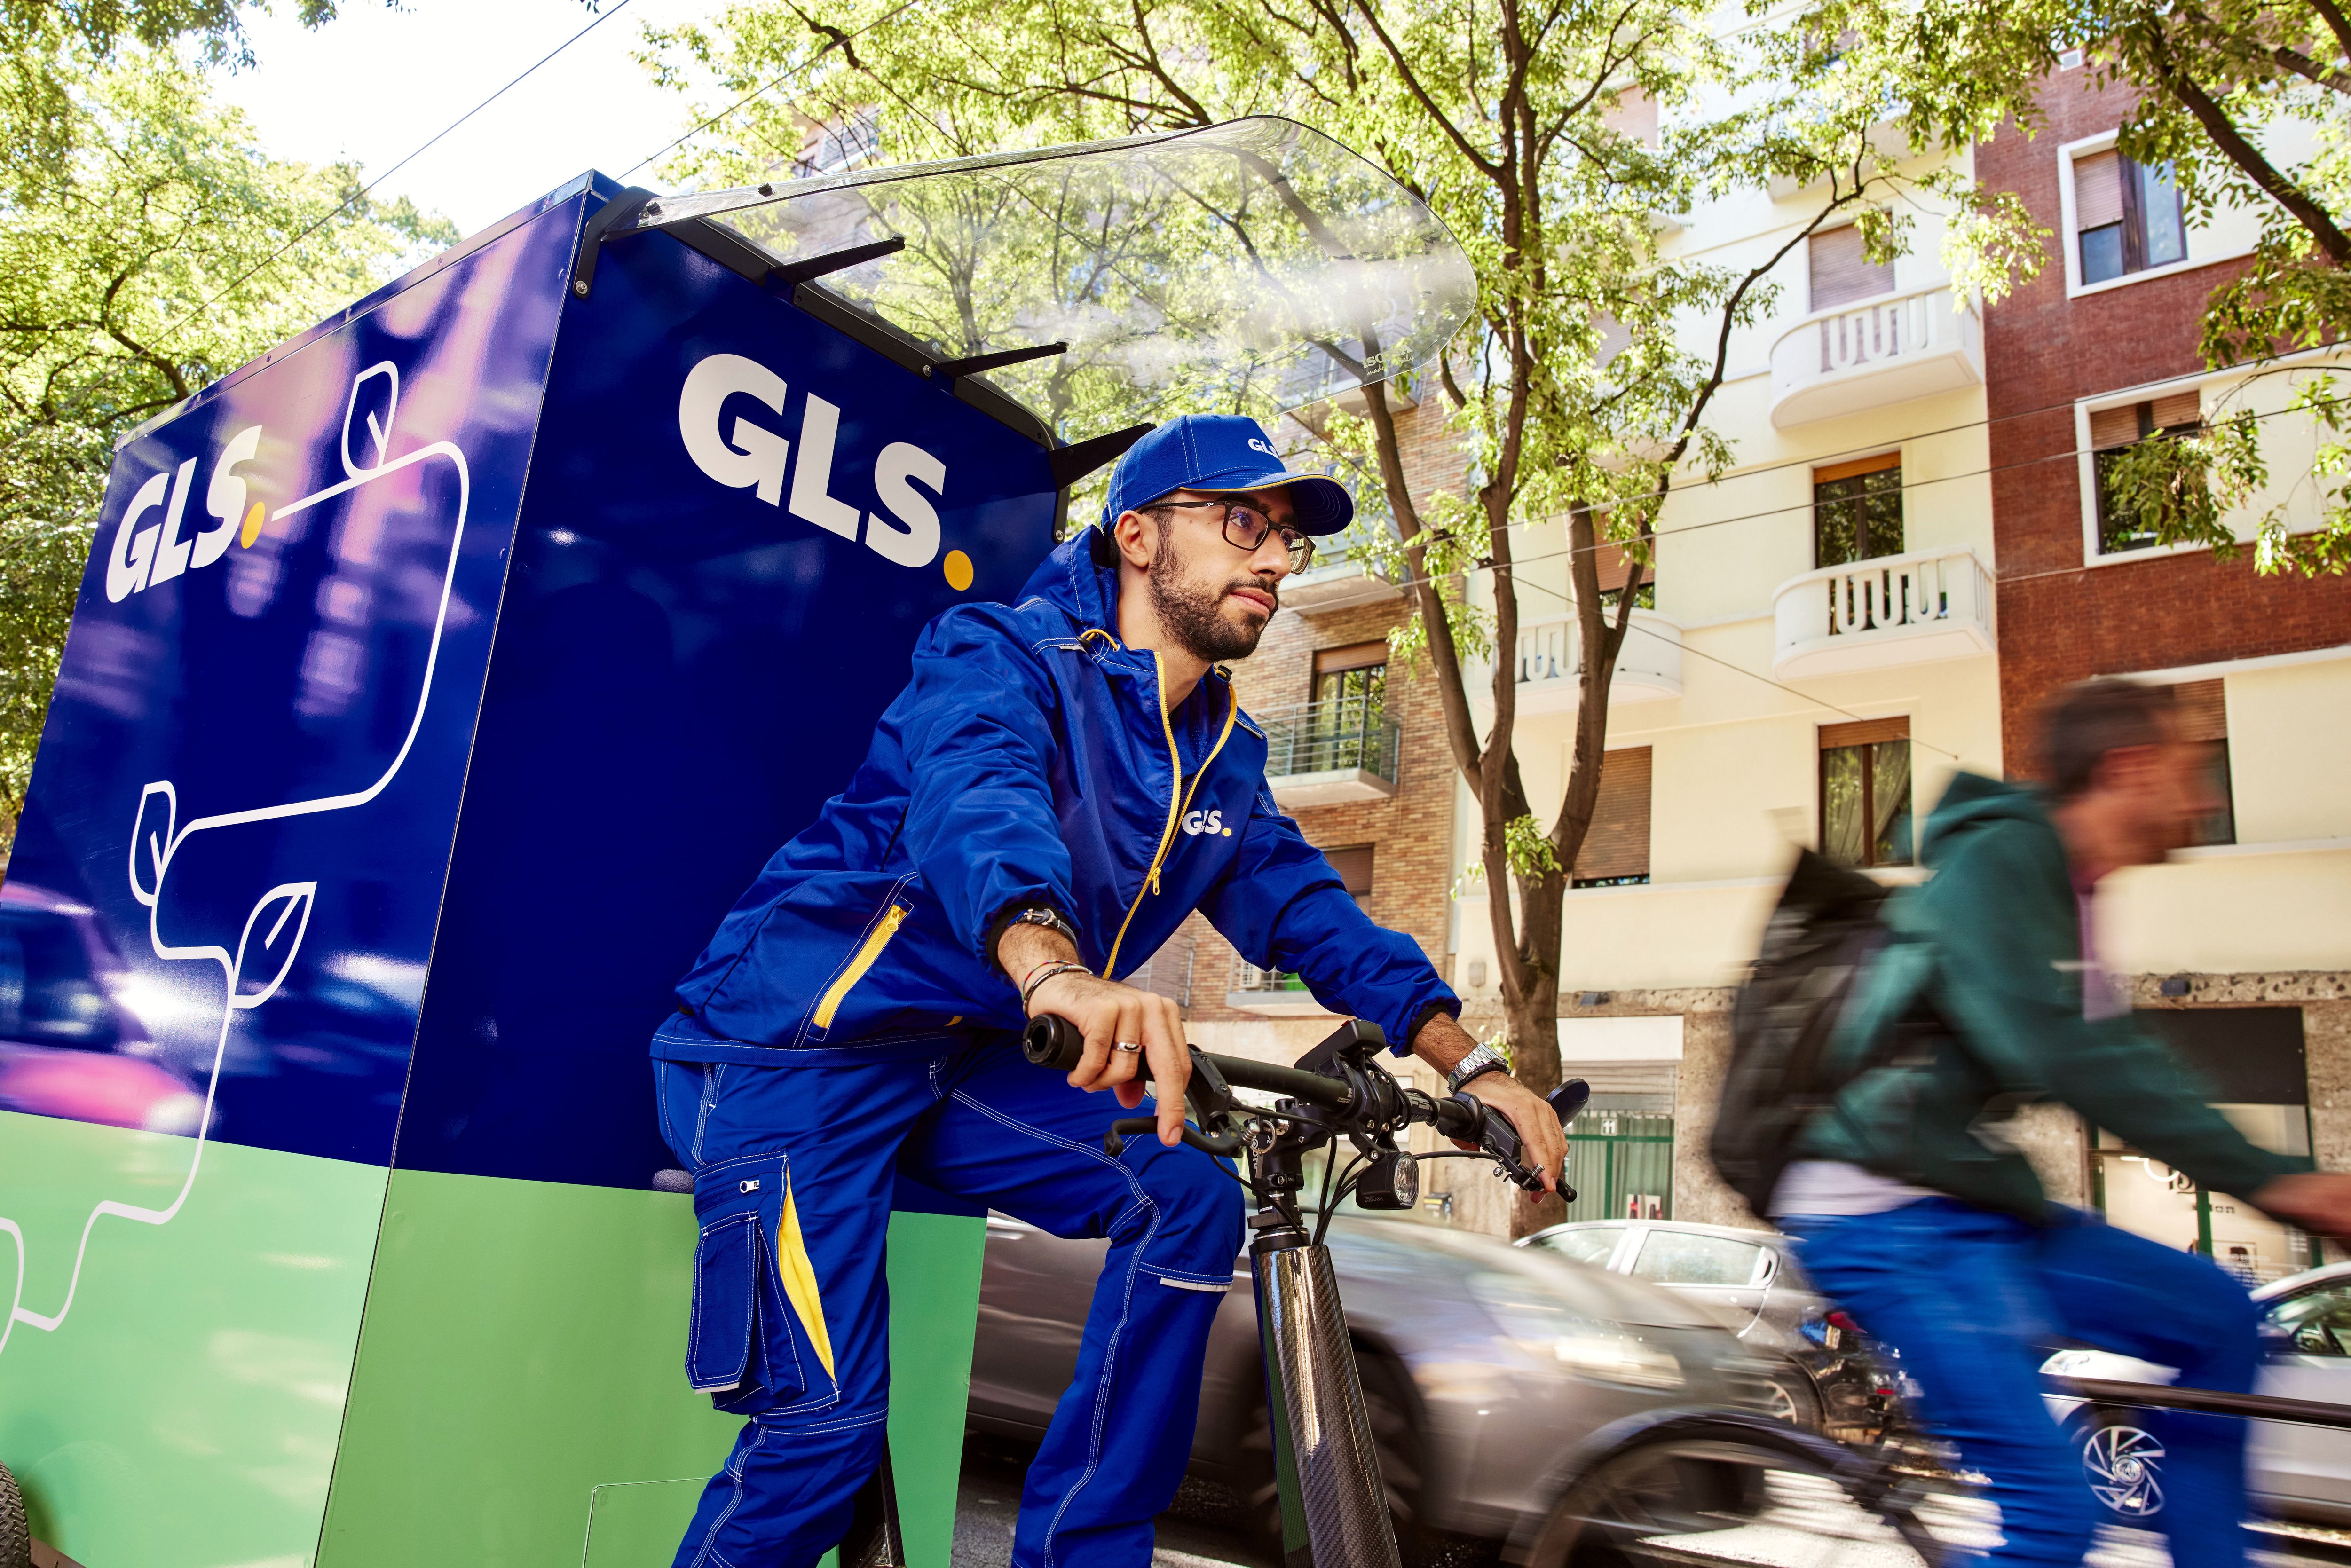 Pendant les Jeux olympiques et paralympiques, GLS livrera ses clients dans les zones restreintes avec des vélos électriques. GLS